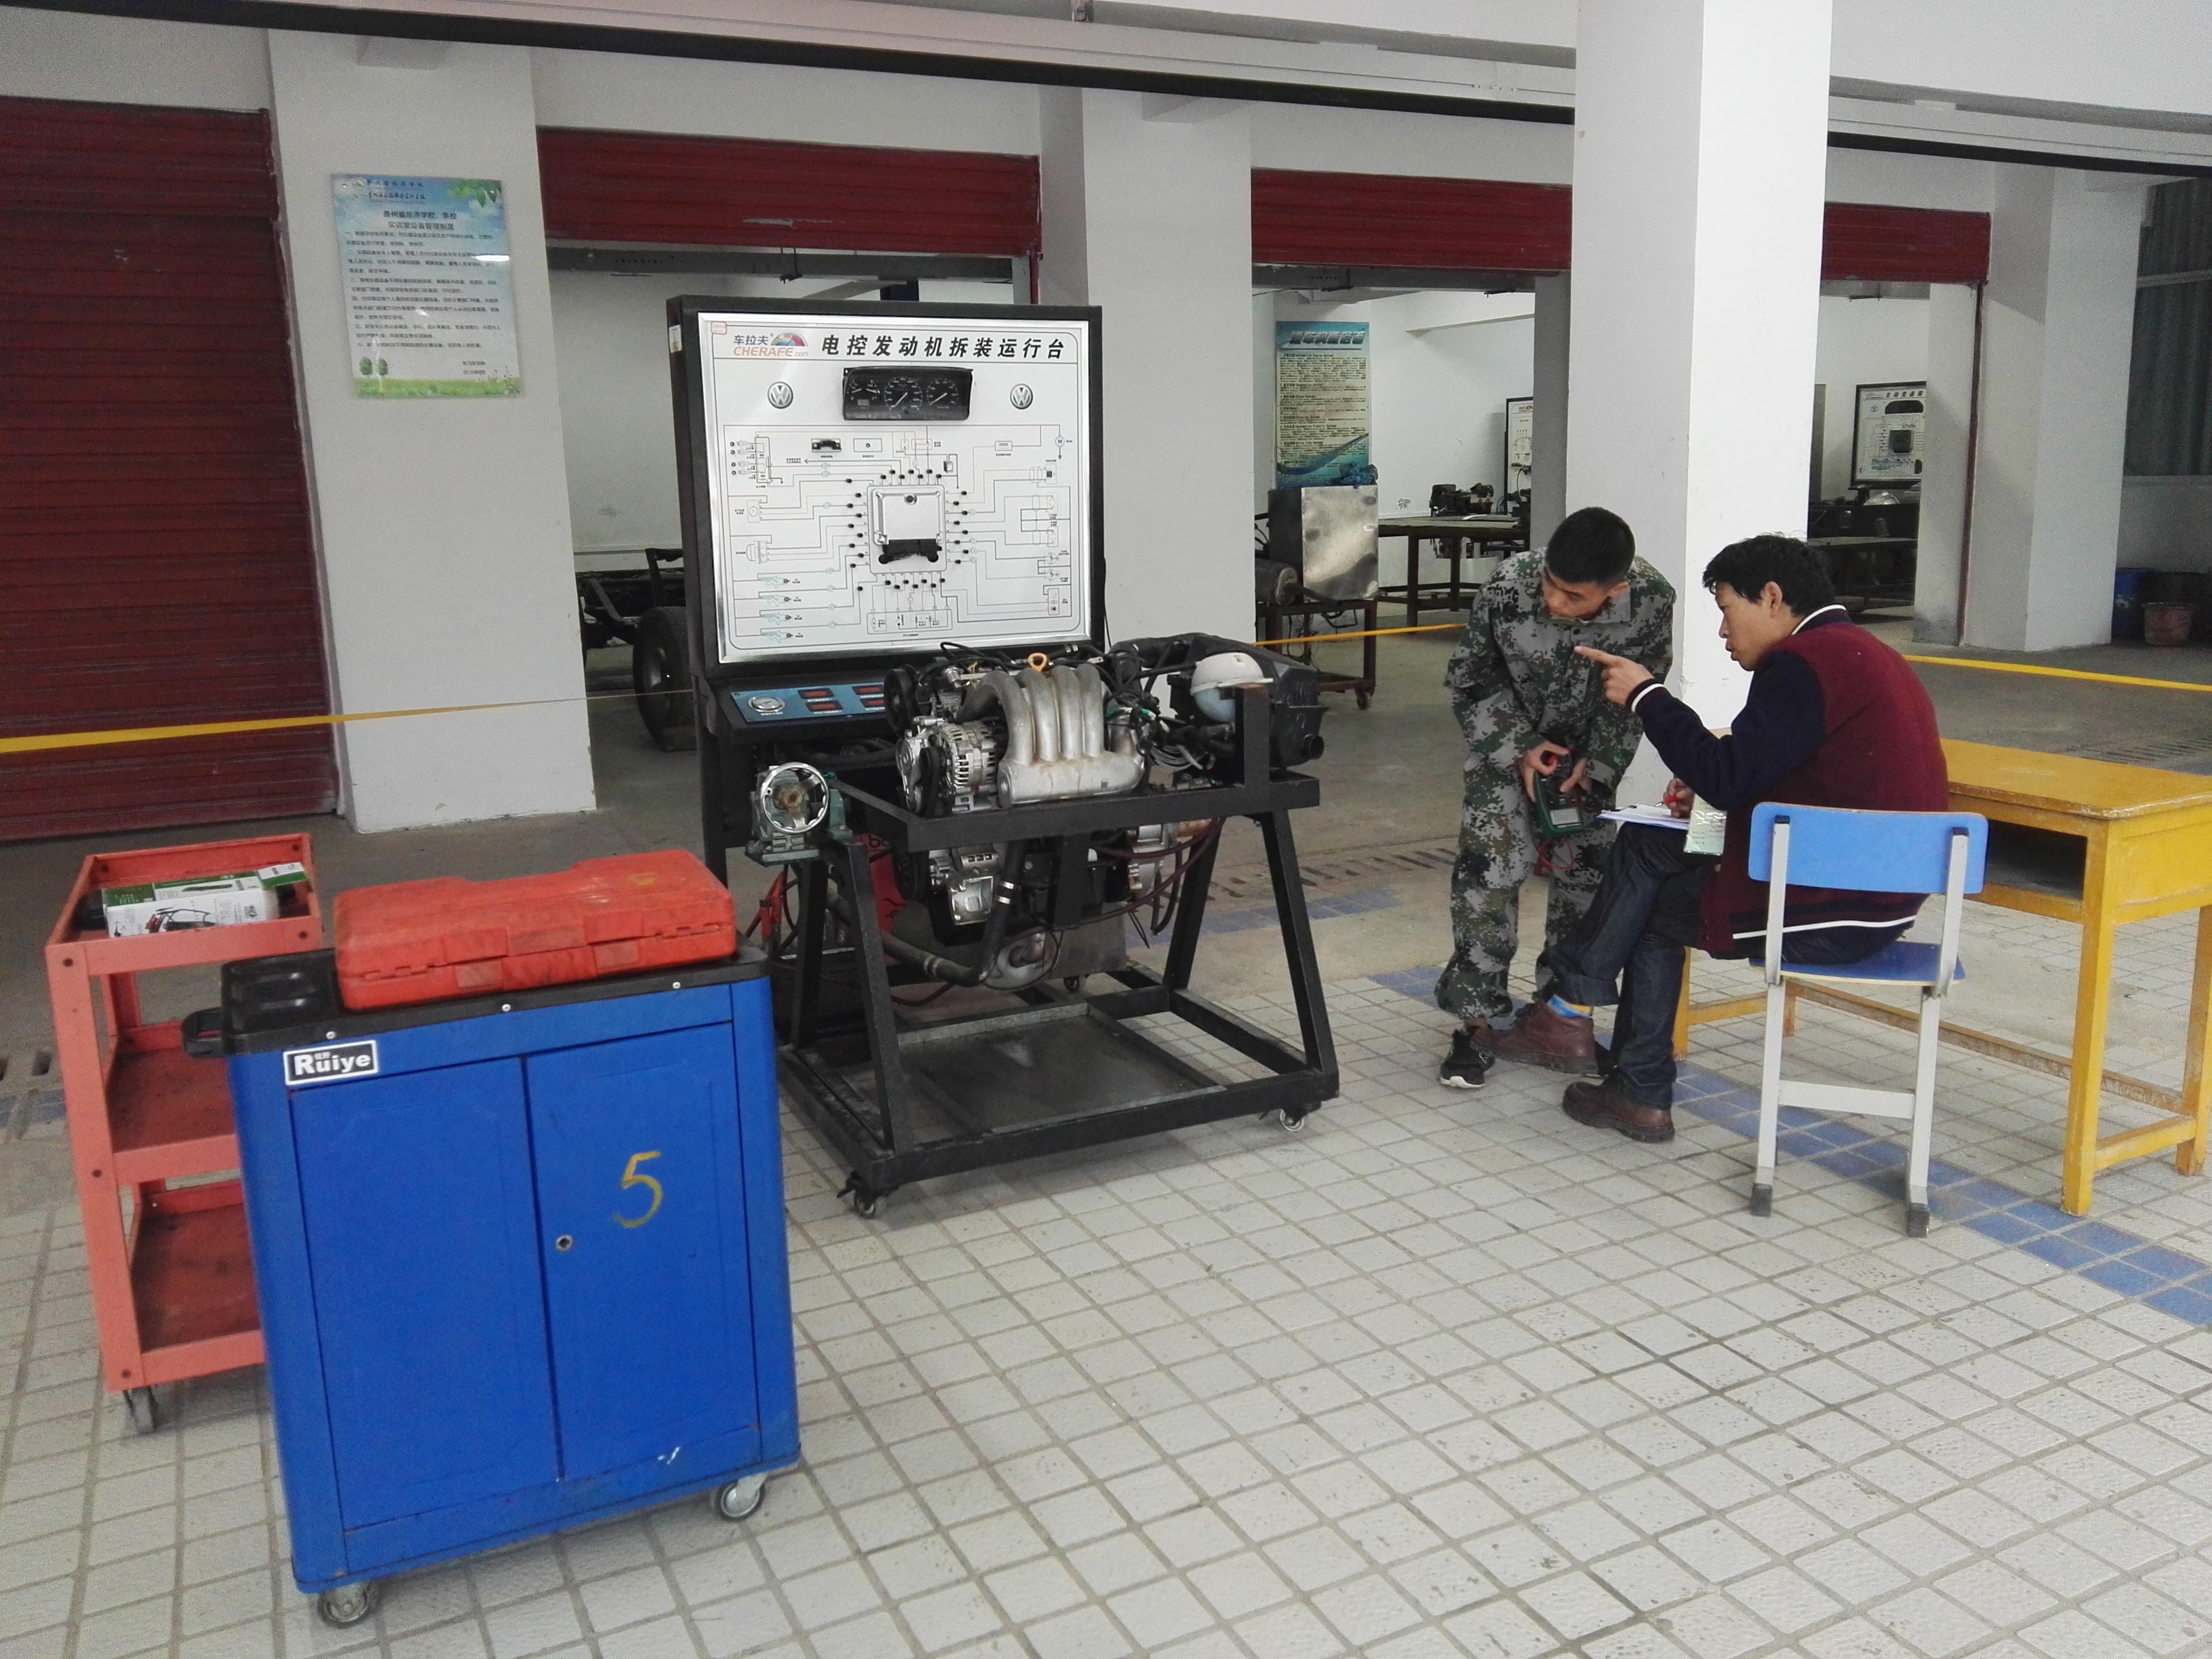 太阳成集团tyc33455cc(贵阳校区)机电工程系汽车电子控制维修实训室简介